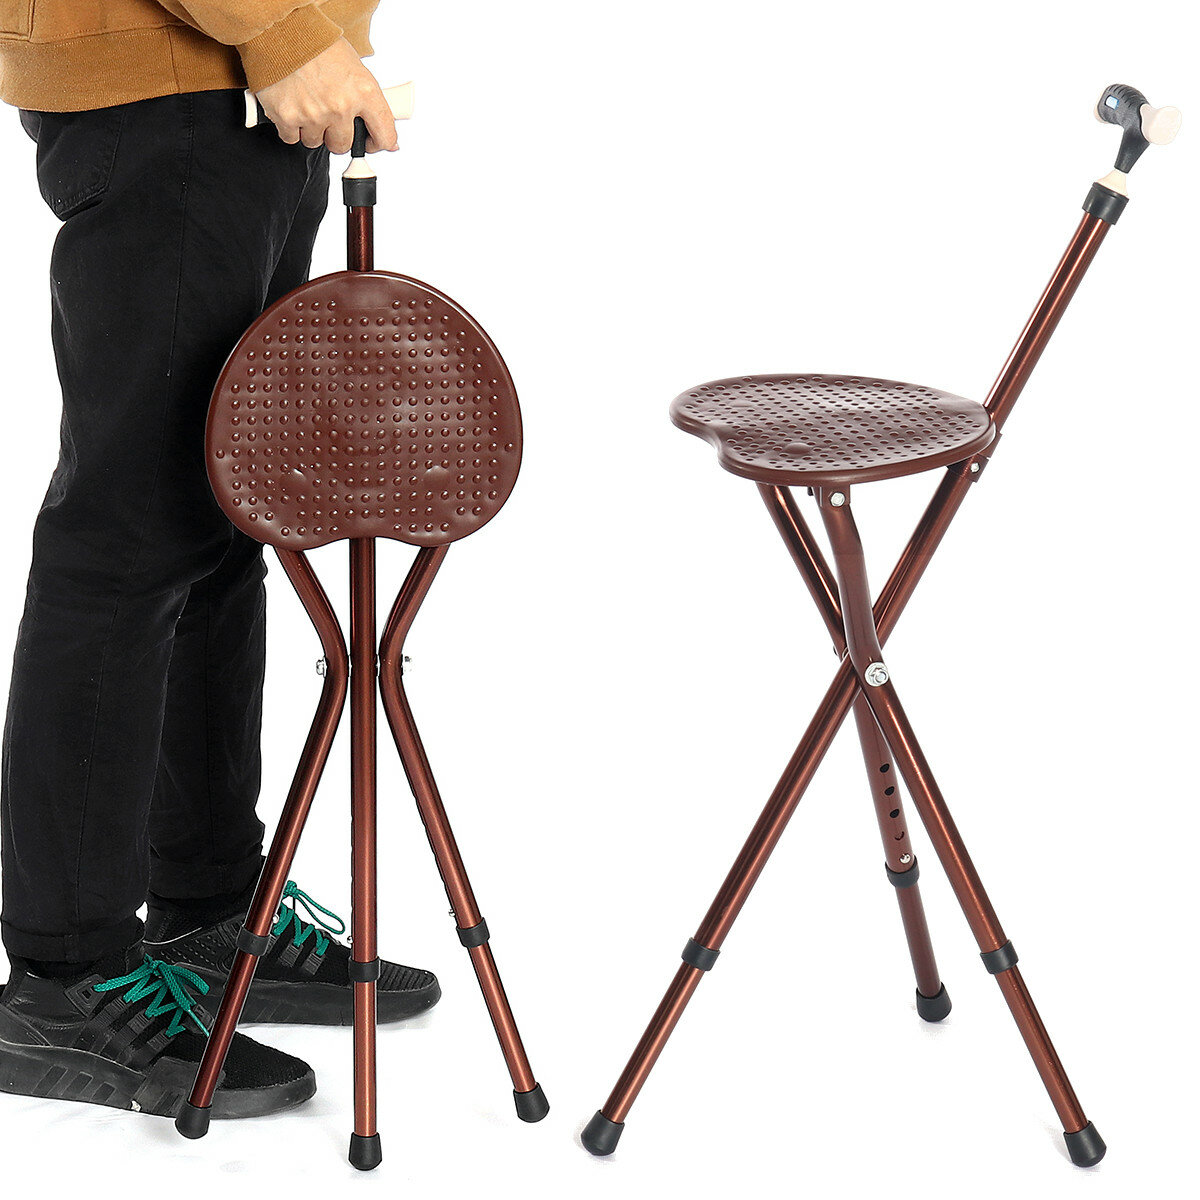 Регулируемый по высоте складной стул-подставка с подсветкой LED, портативная складная трость-стул для пожилых людей.